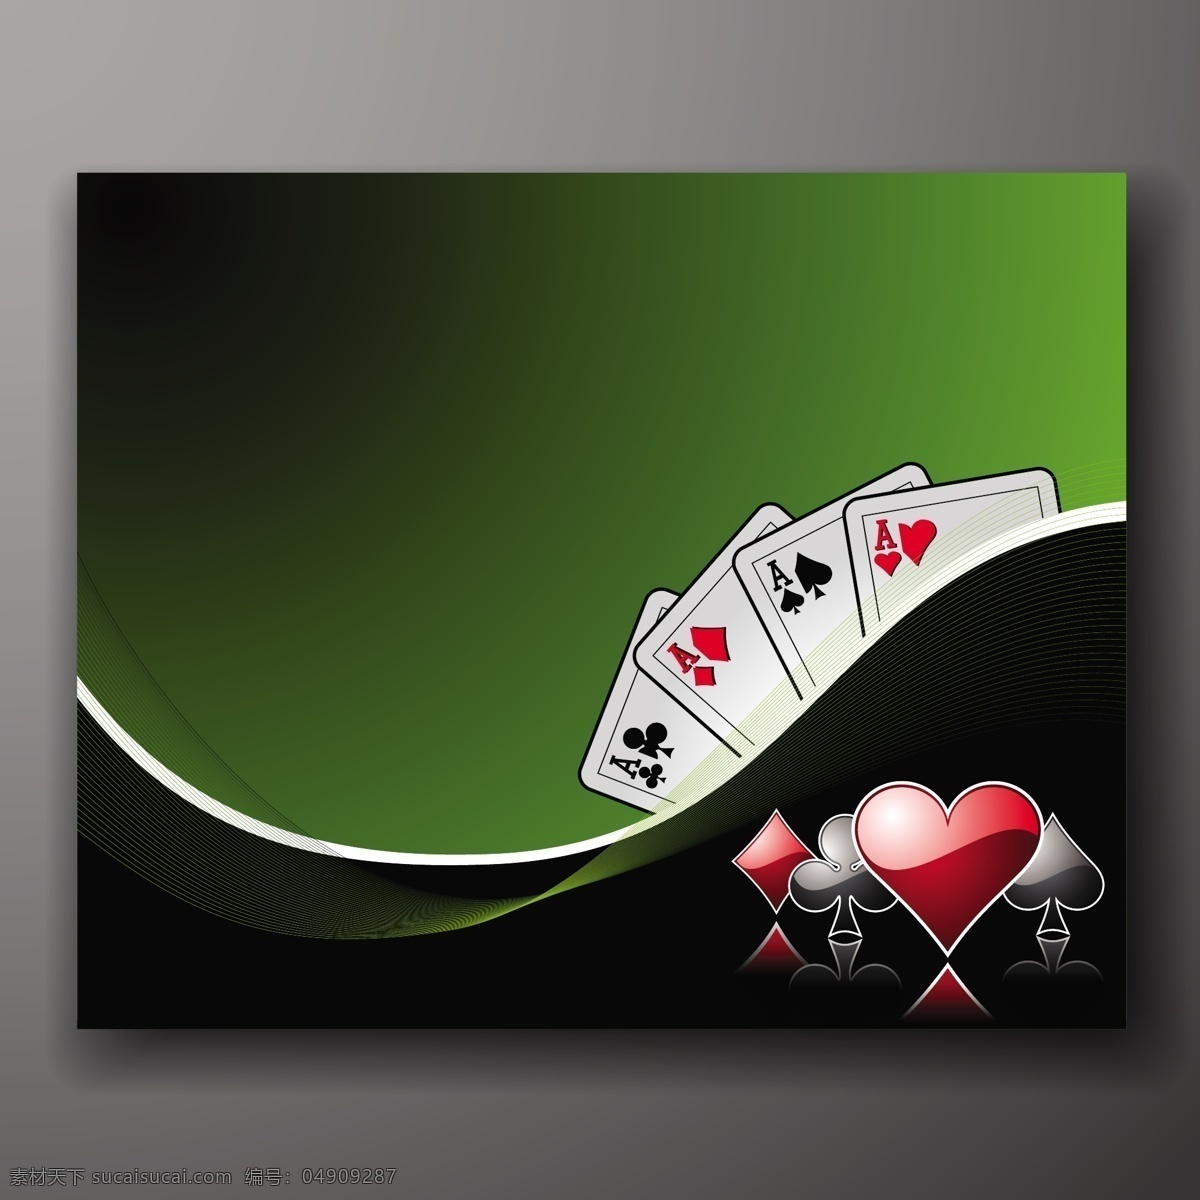 赌场背景设计 背景 心 卡 飞溅 壁纸 钻石 颜色 垃圾 游戏 形状 成功 丰富多彩 赢家 赌场 打牌 玩扑克 颜色飞溅